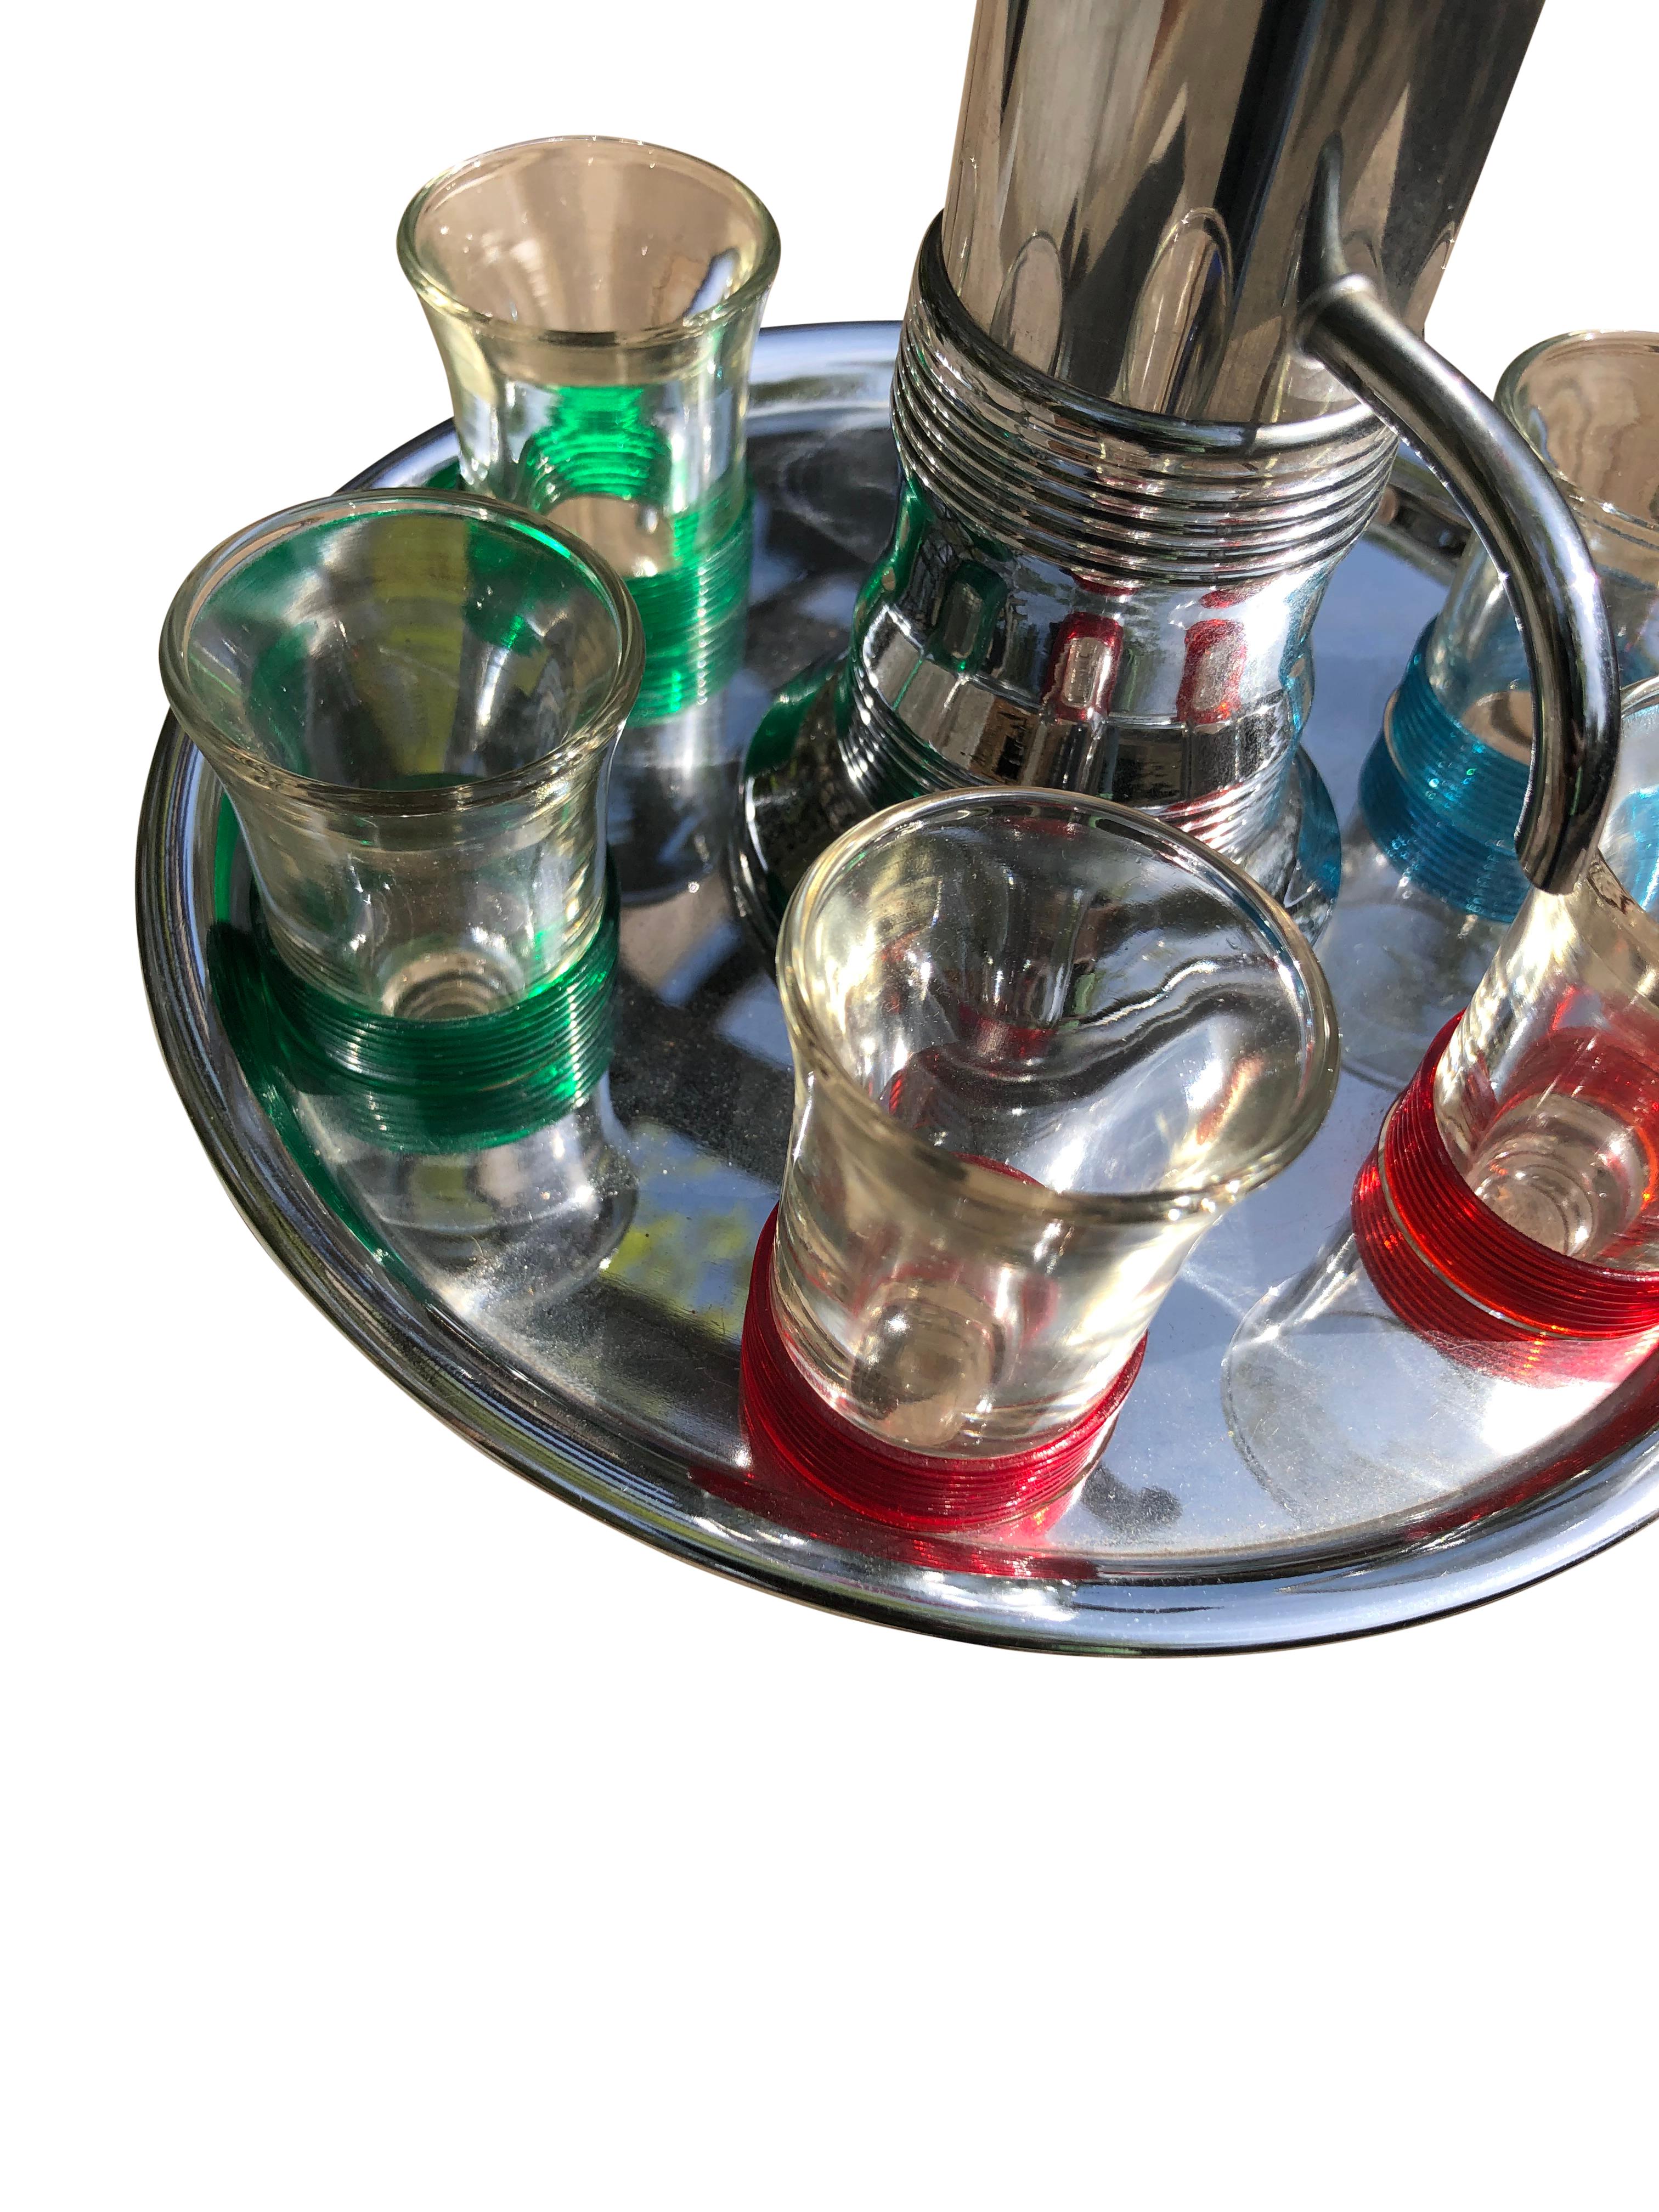 Vintage Mid-Century Carousel Liquor Dispenser mit 6 Schnapsgläsern auf einer runden Chromplatte mit 6 Aussparungen für die Schnapsgläser. Die Schnapsgläser sind paarweise mit farblich abgestimmten Bändern gruppiert. Es gibt zwei Gläser mit grünen